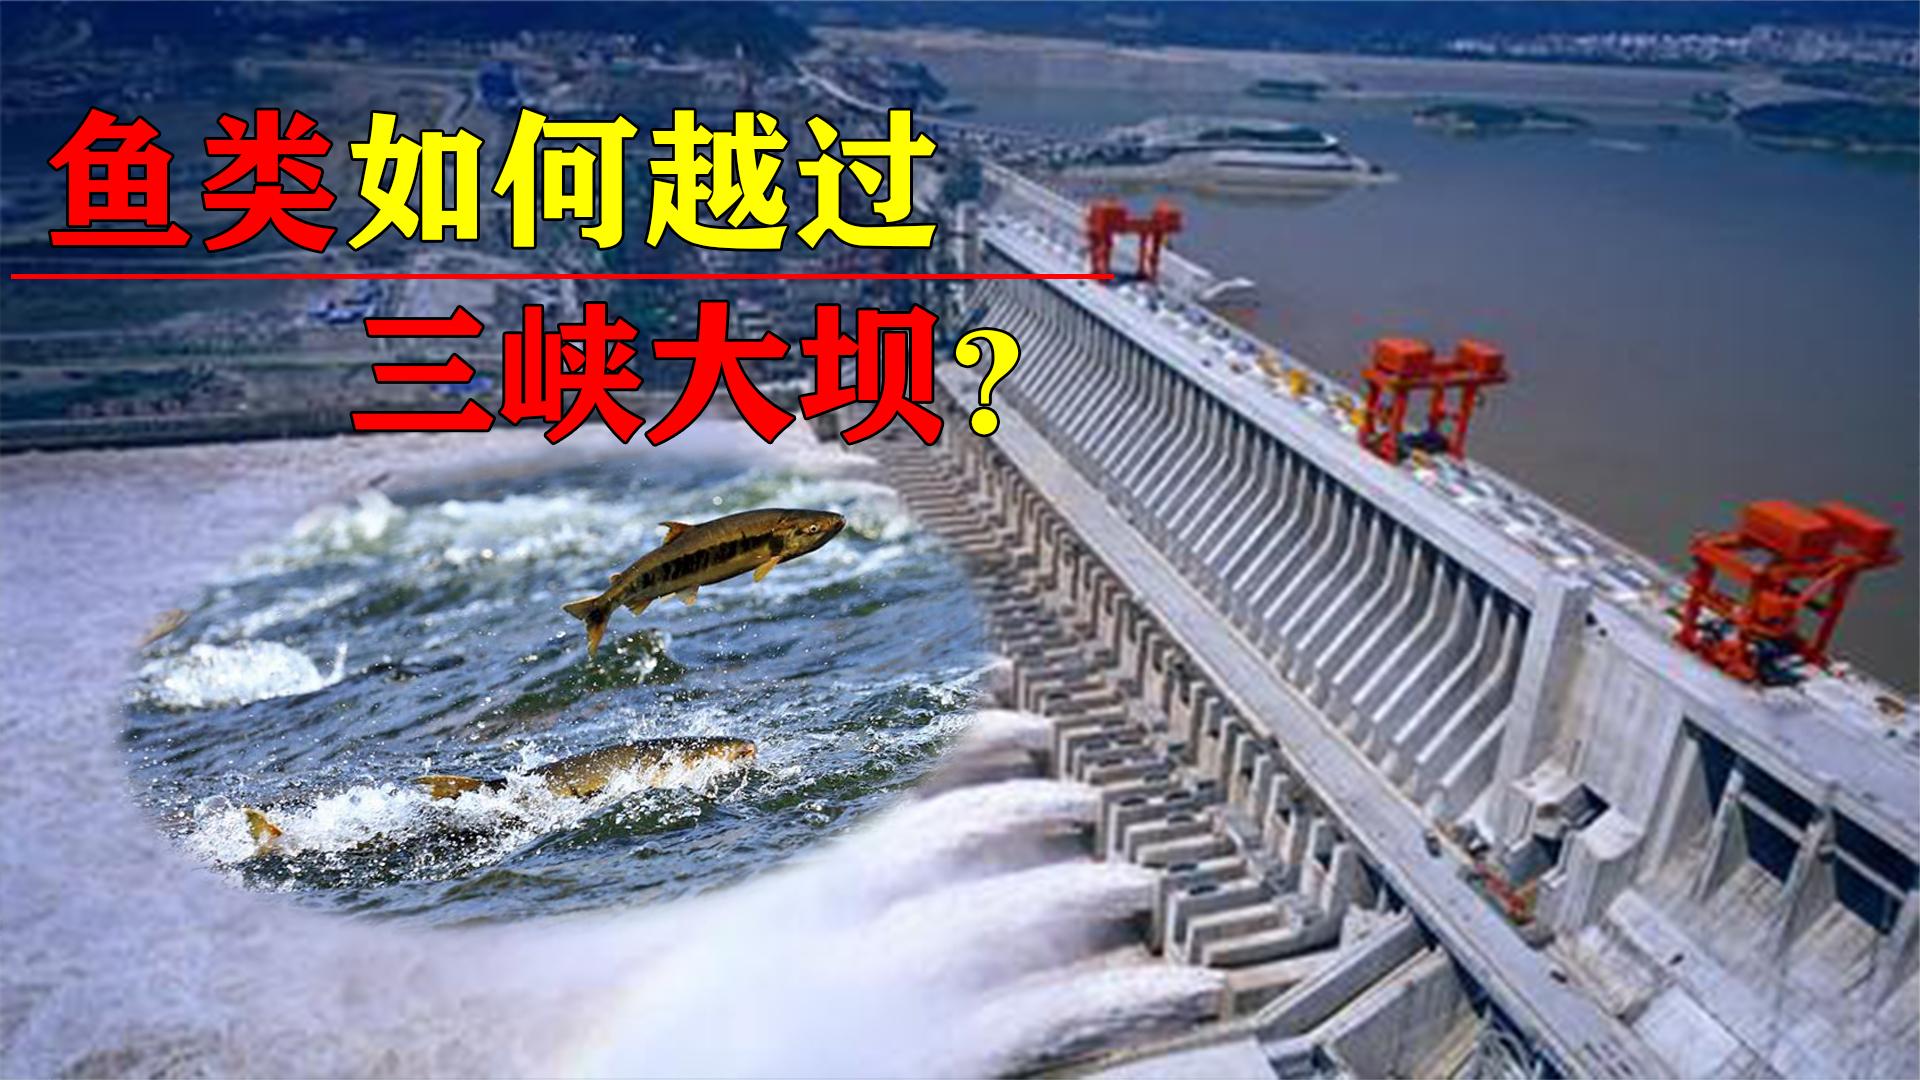 原创三峡水电站修建后那些鱼类要如何通过大坝至今仍是世界难题